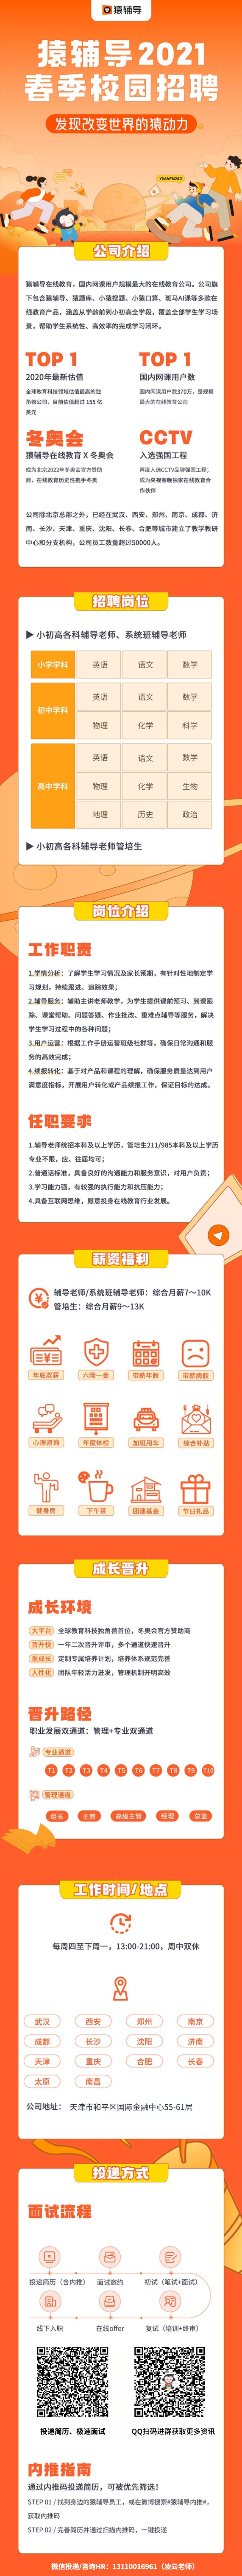 北京猿力未来公司招聘简章.jpg